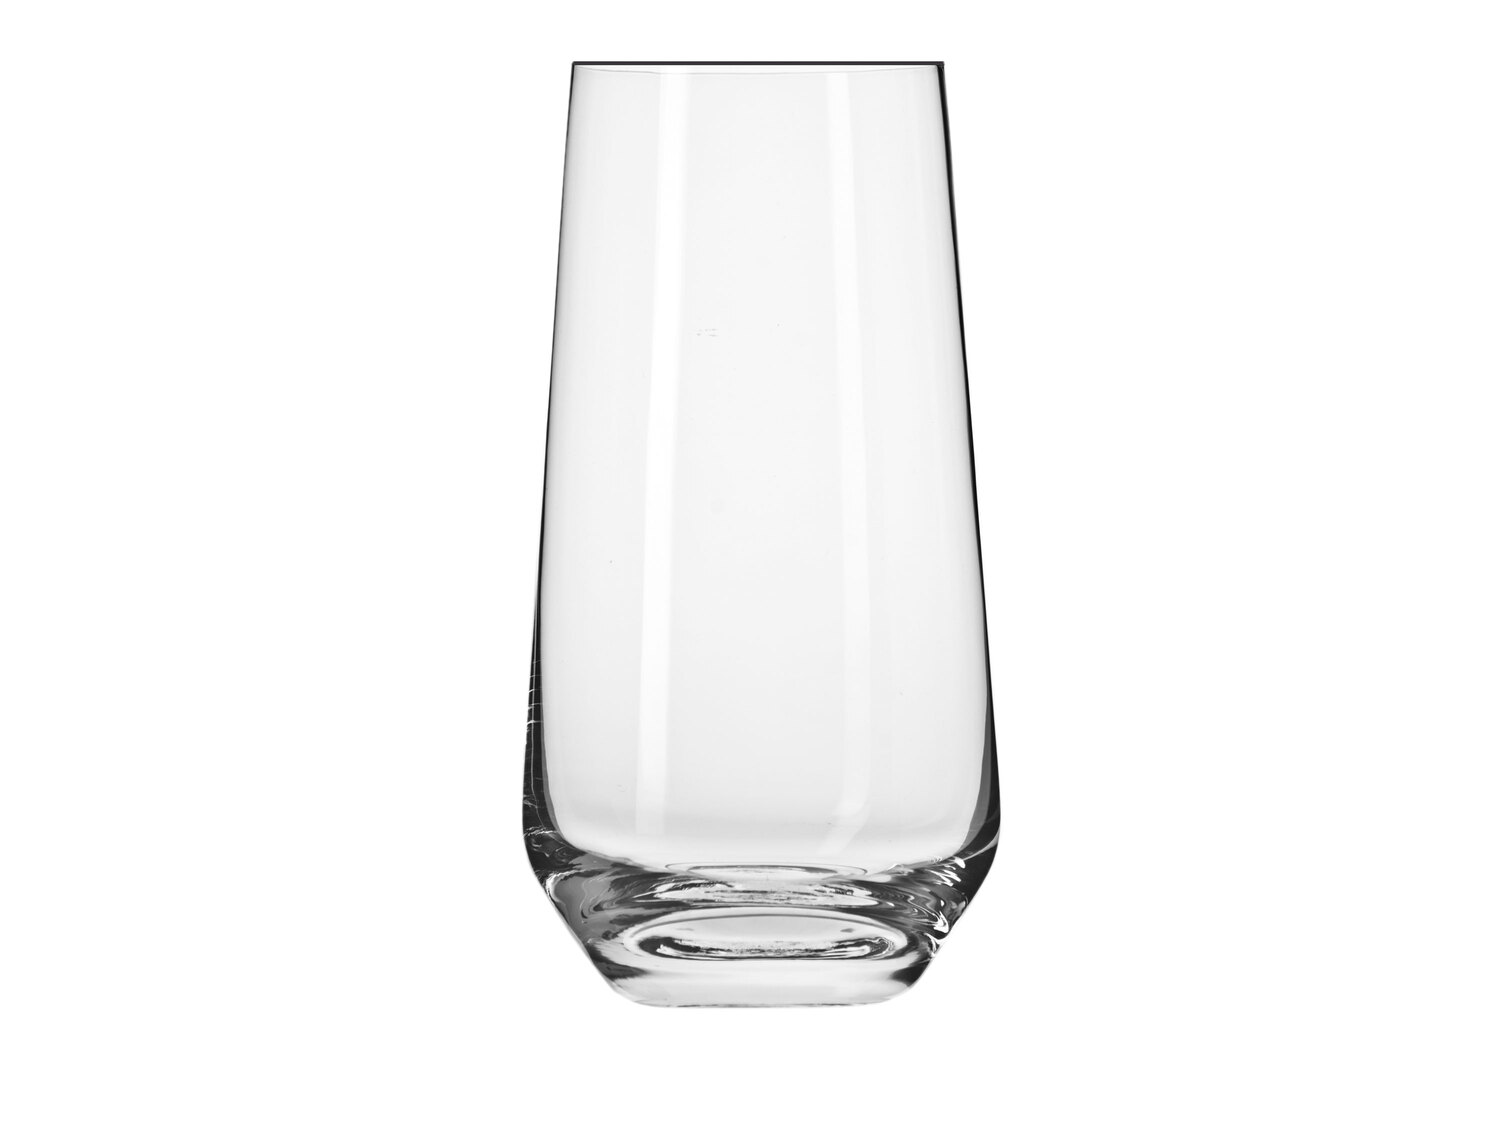 Zestaw 6 szklanek 480 ml , cena 29,99 PLN 
- wysokość: 155 mm
- szkło crystalline ...